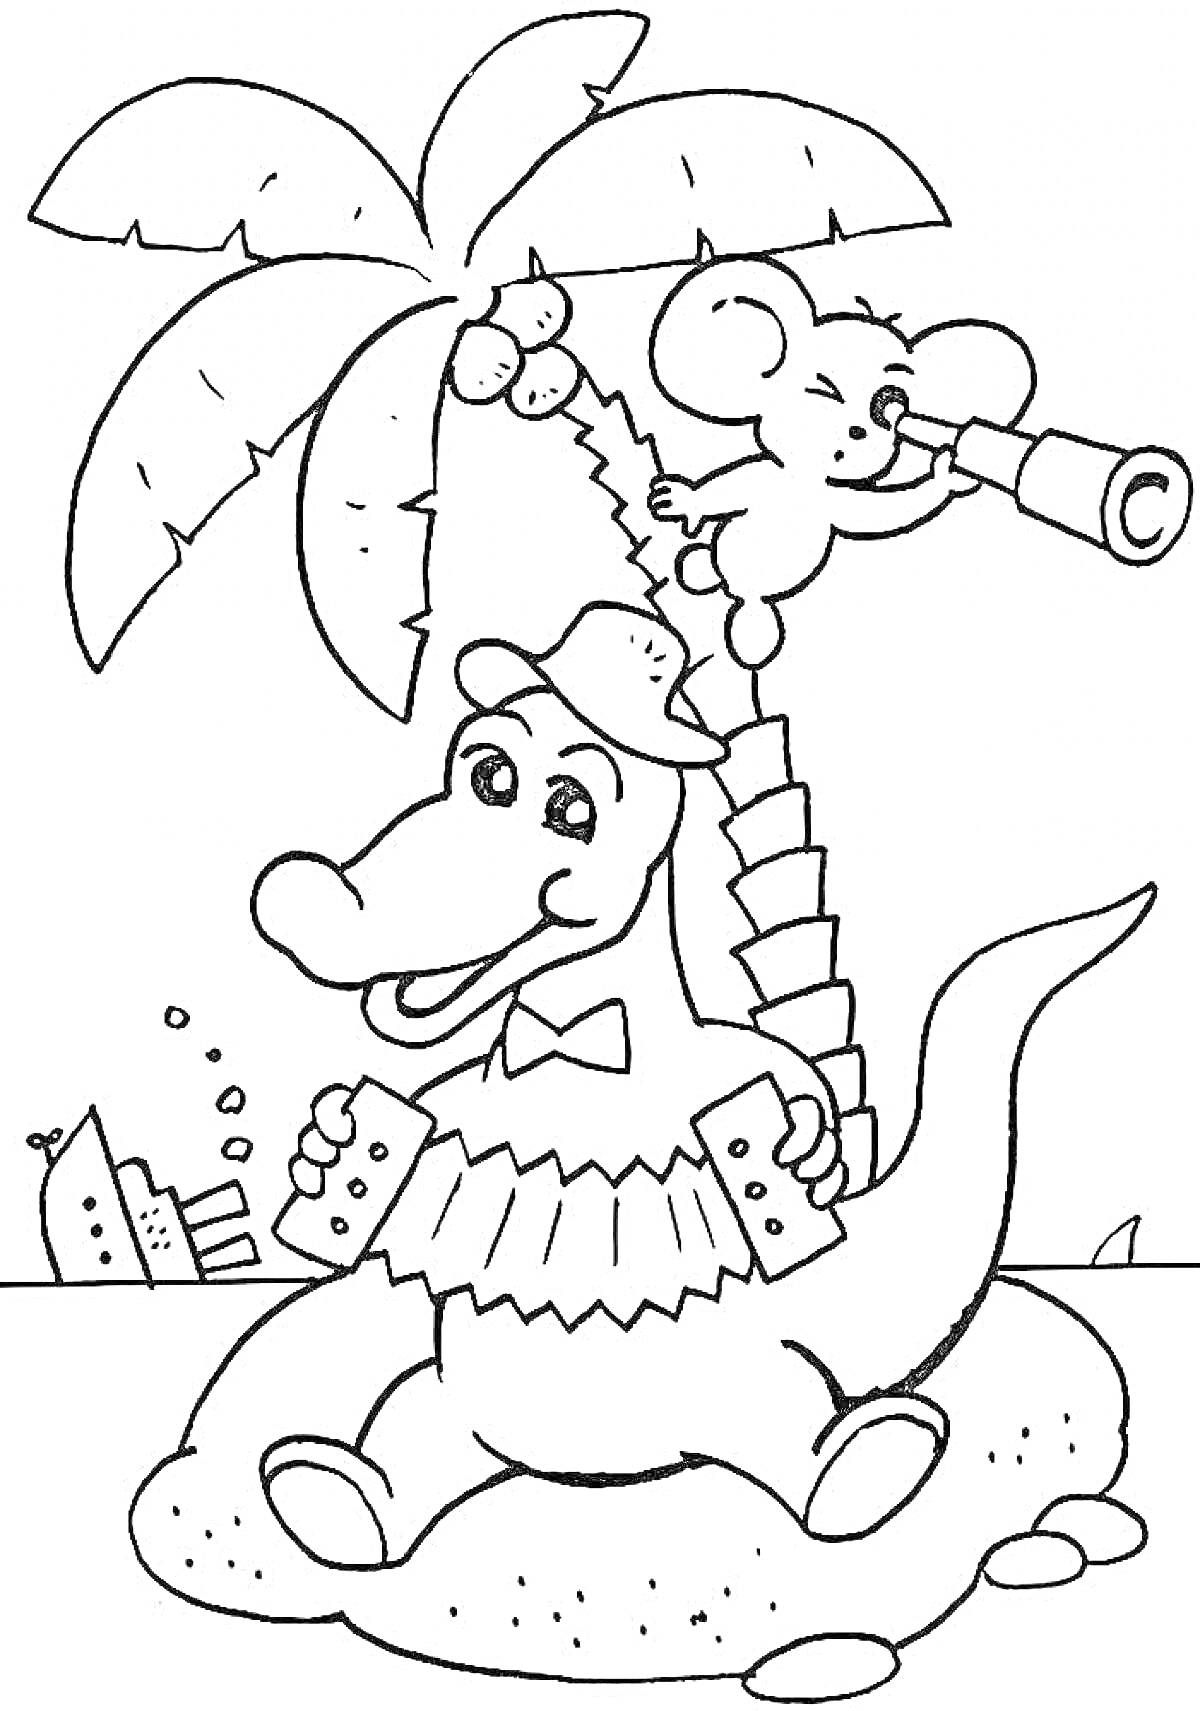 Раскраска Чебурашка и крокодил Гена на острове с пальмой, Чебурашка с подзорной трубой, Гена с гармошкой